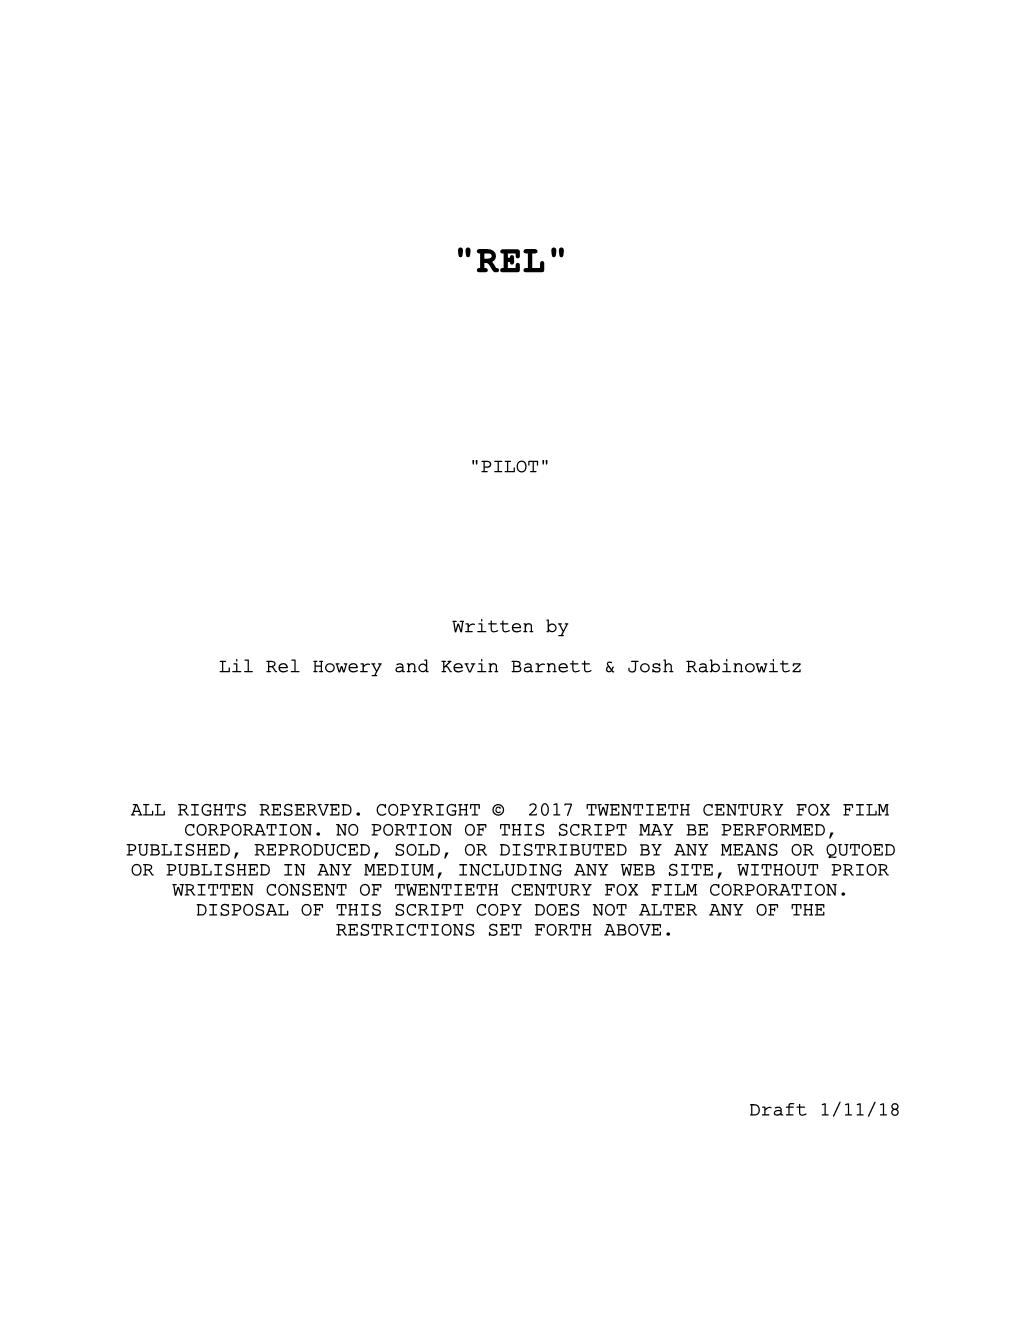 "REL", Pilot Script, 1-11-18